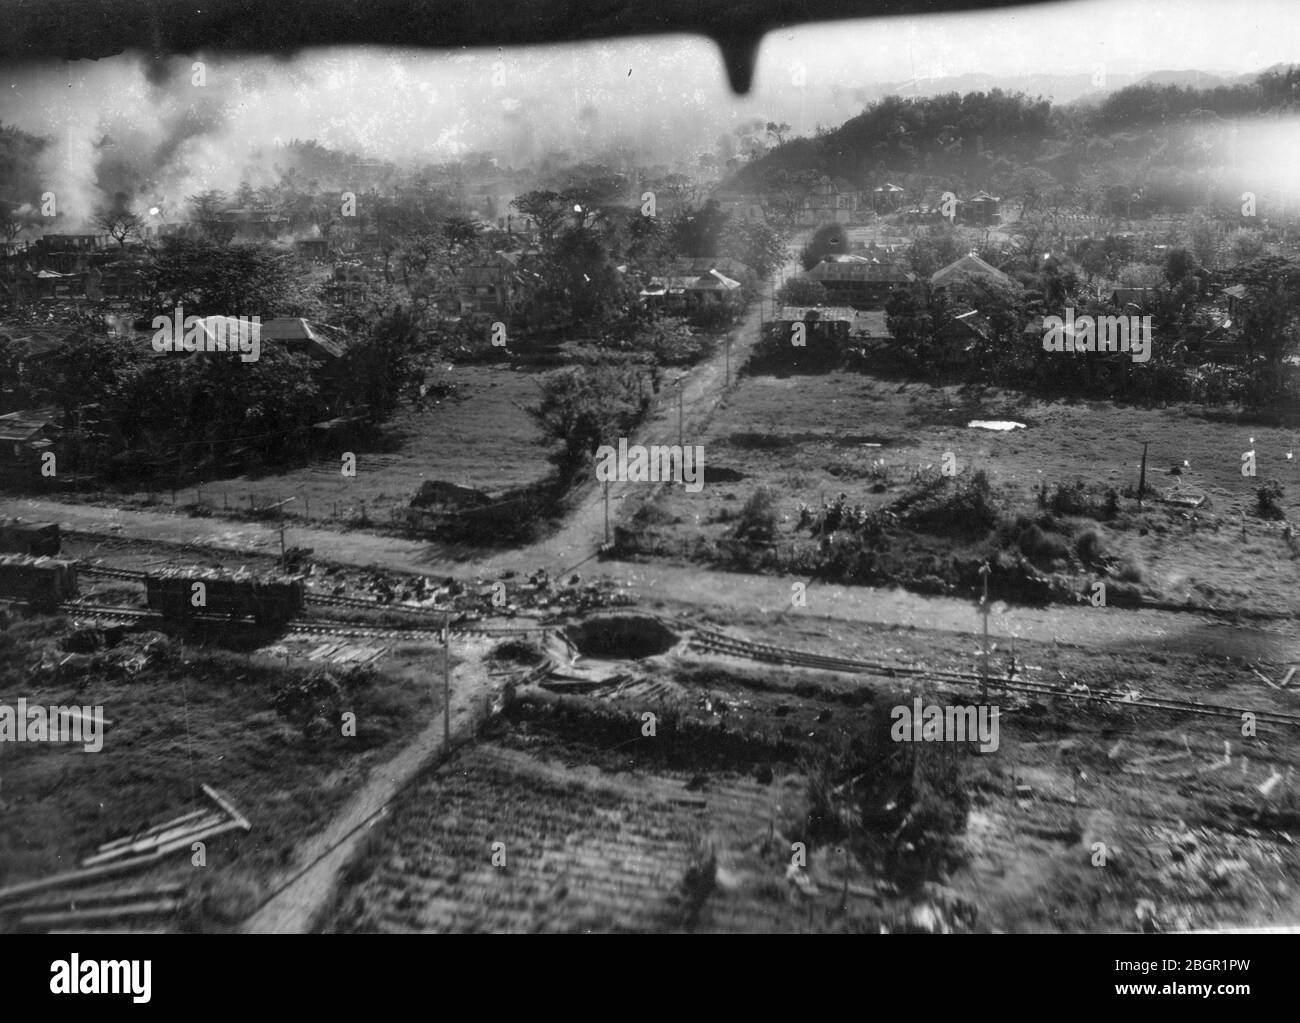 Bombes larguées # 2. L'armée de l'air force est en bombardement de vol au-dessus de la ville vallonnée de San Fernando, aux Philippines, c. 1945. Cette vue de derrière suit la photo précédente, montrant le paysage à environ 100 mètres plus loin du village. Cette vue aérienne montre de nombreux cratères à bombe au sol, y compris un coup direct sur les voies ferrées de la ville. Plus de poussière et de fumée lourdes augmentent du sol où les bombes ont frappé. Pour voir mes autres images liées à WW II, recherchez: Prestor millésime WW II Banque D'Images